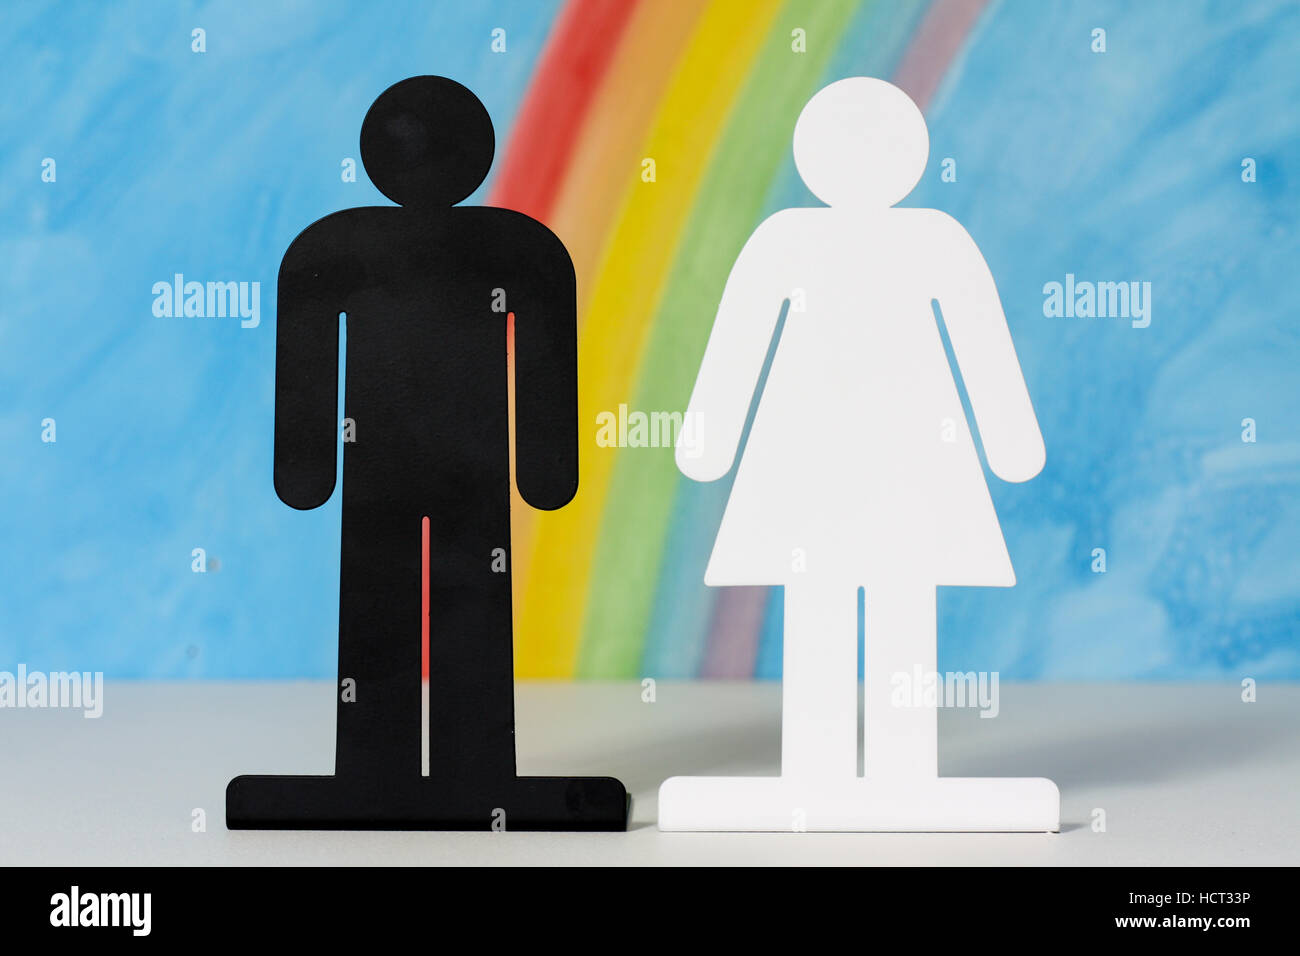 Mann und Frau Symbole mit einem Regenbogen und blauer Himmel zur Veranschaulichung des Konzepts der Ehe, Beziehungen und Gleichstellung der Geschlechter. Stockfoto